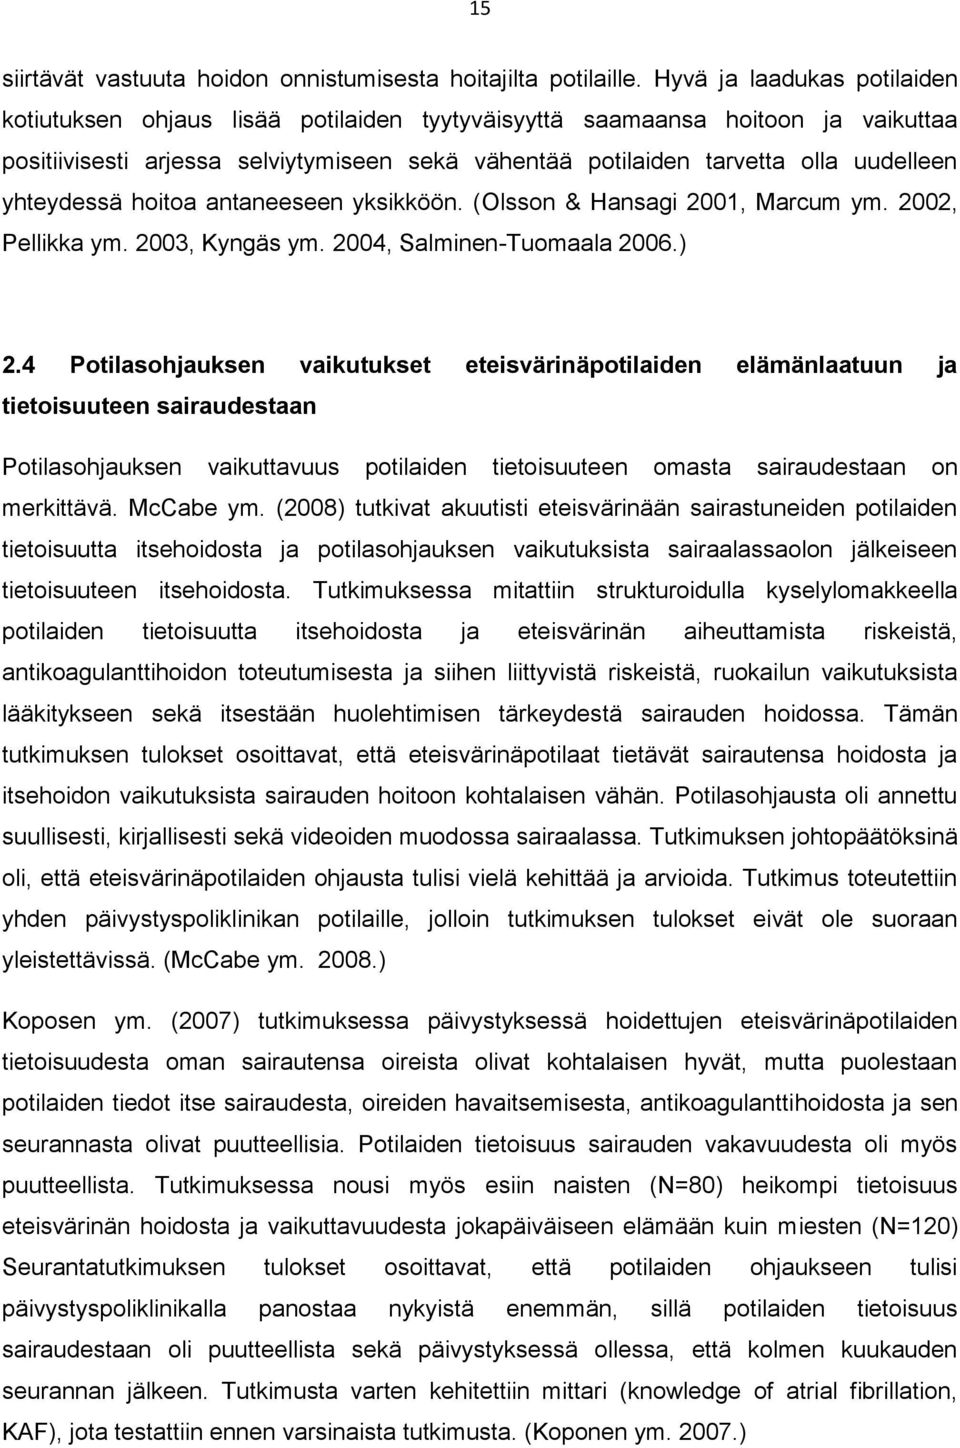 yhteydessä hoitoa antaneeseen yksikköön. (Olsson & Hansagi 2001, Marcum ym. 2002, Pellikka ym. 2003, Kyngäs ym. 2004, Salminen-Tuomaala 2006.) 2.